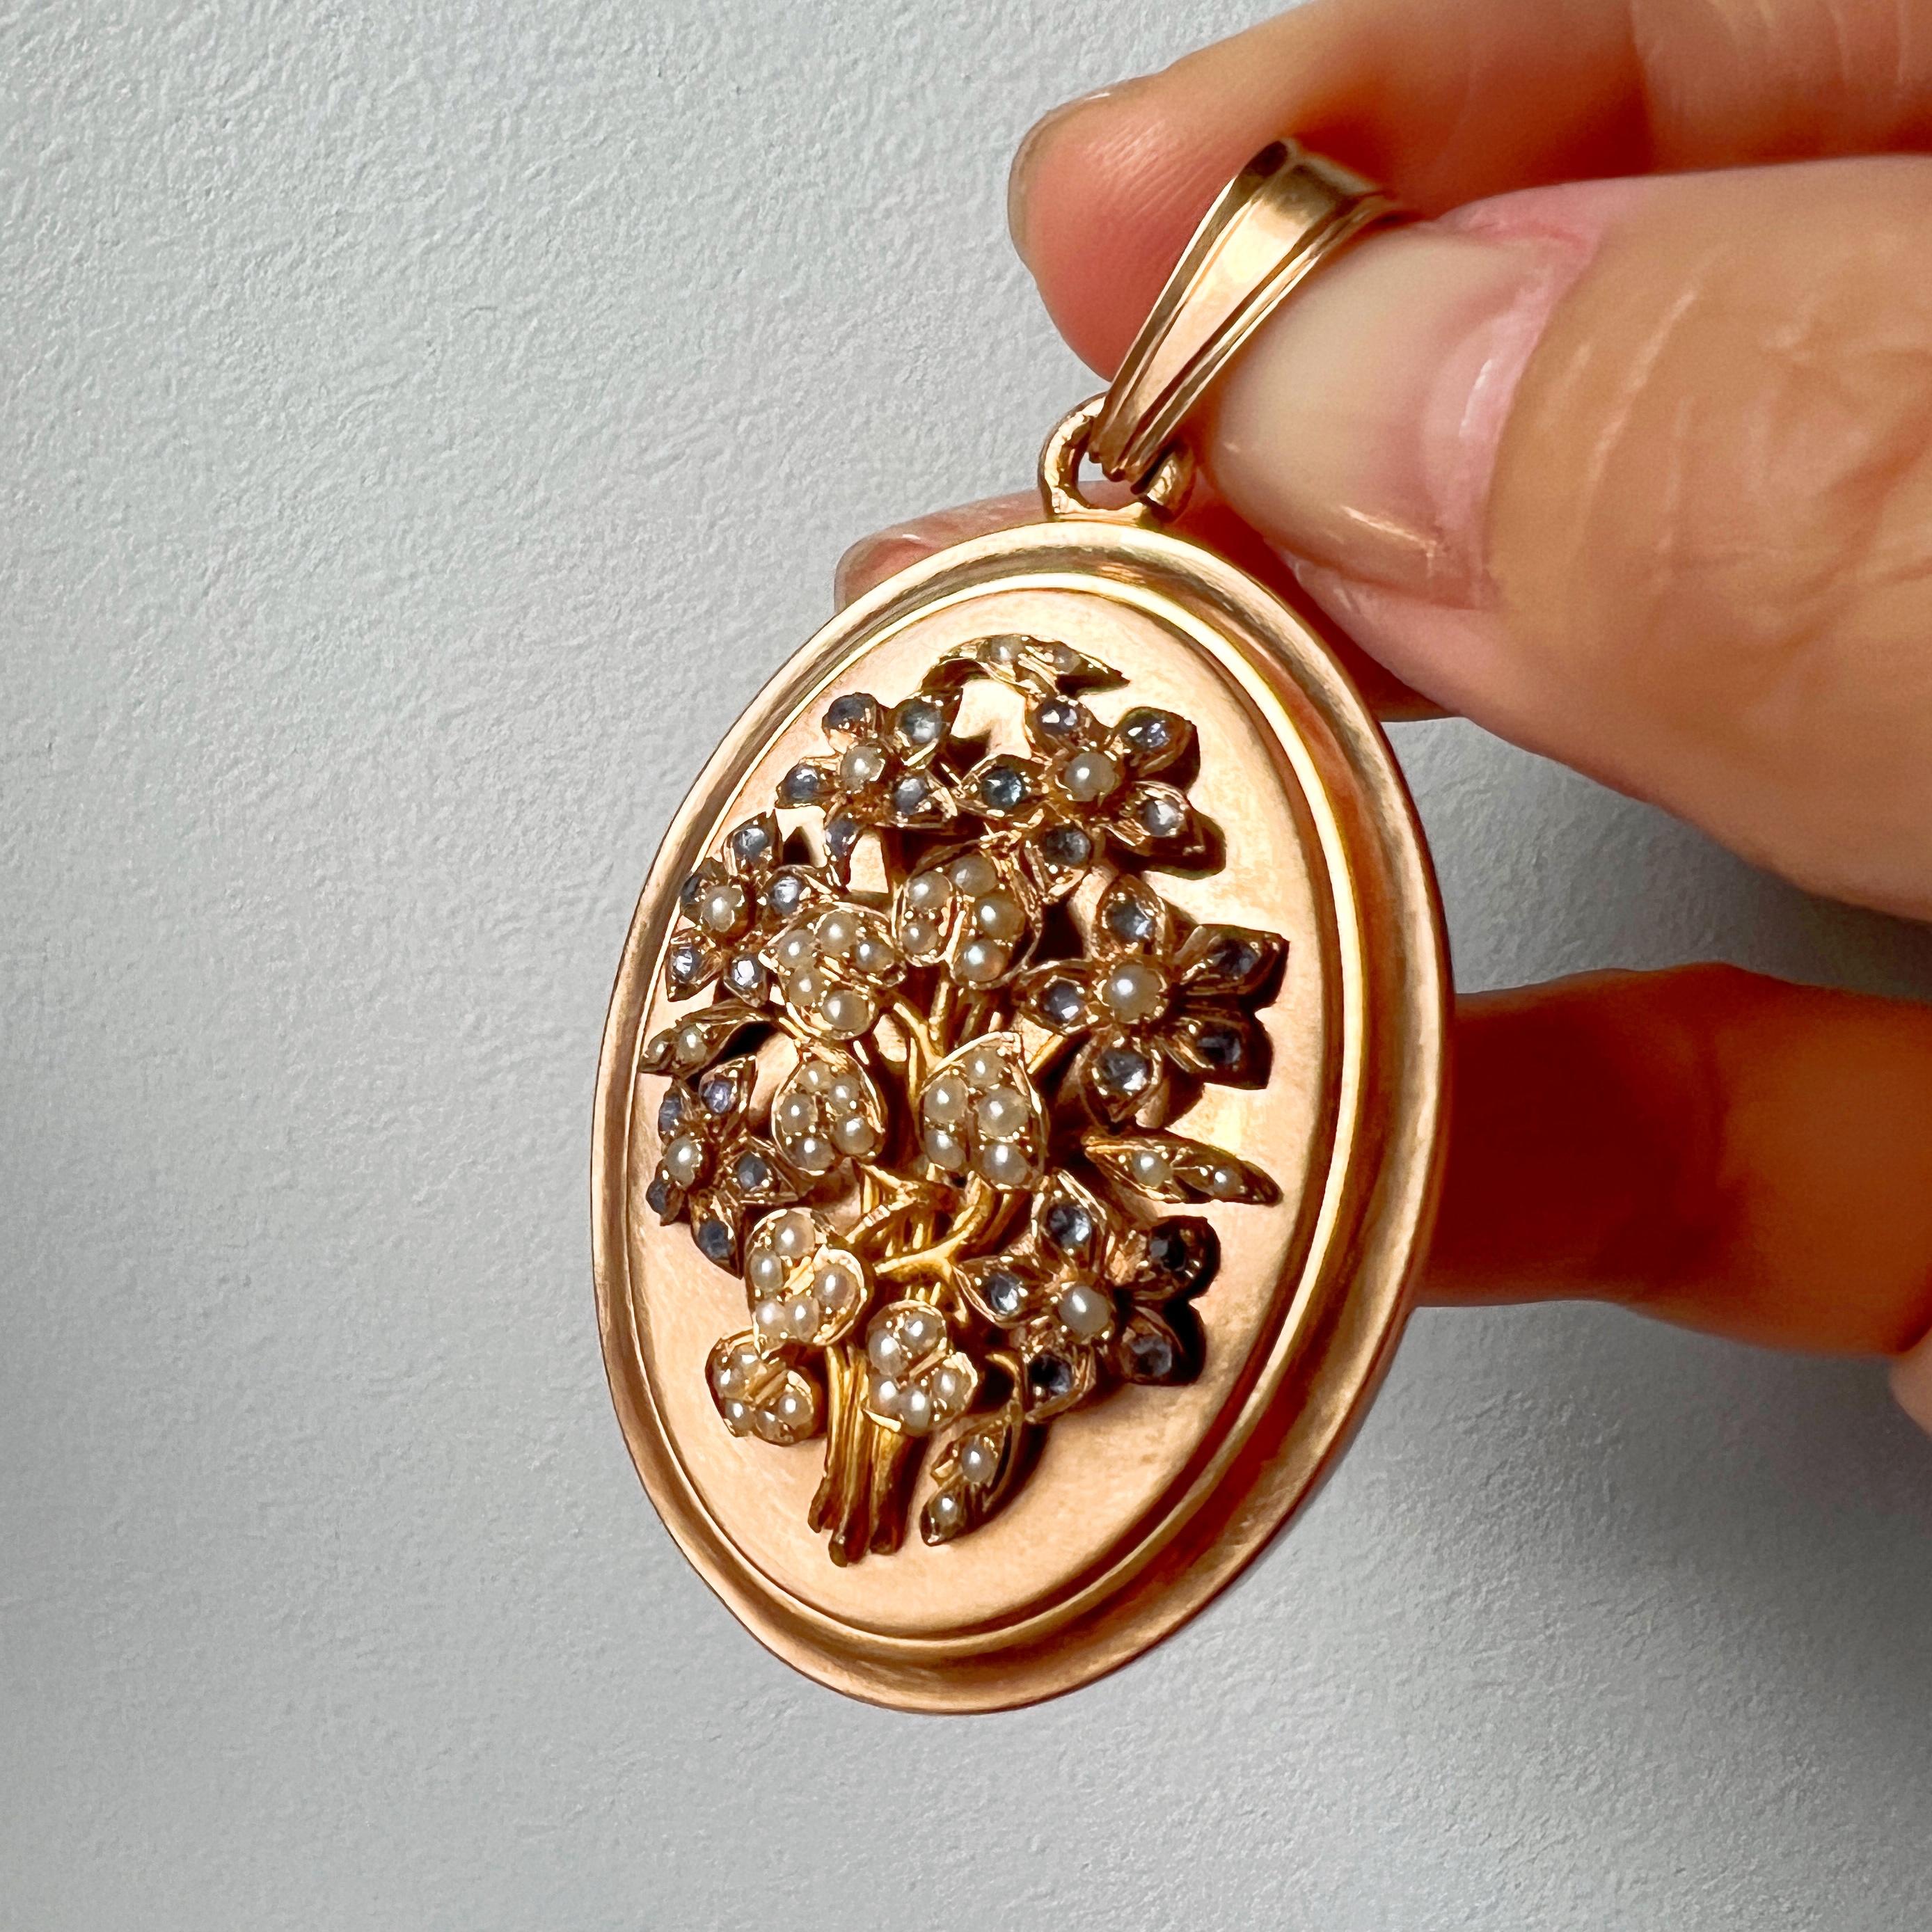 Nous vendons un magnifique pendentif médaillon en or 18 carats, datant de l'époque victorienne, qui présente un ravissant bouquet de fleurs méticuleusement confectionné à partir de perles de rocaille naturelles et de saphirs bleus rayonnants sur sa